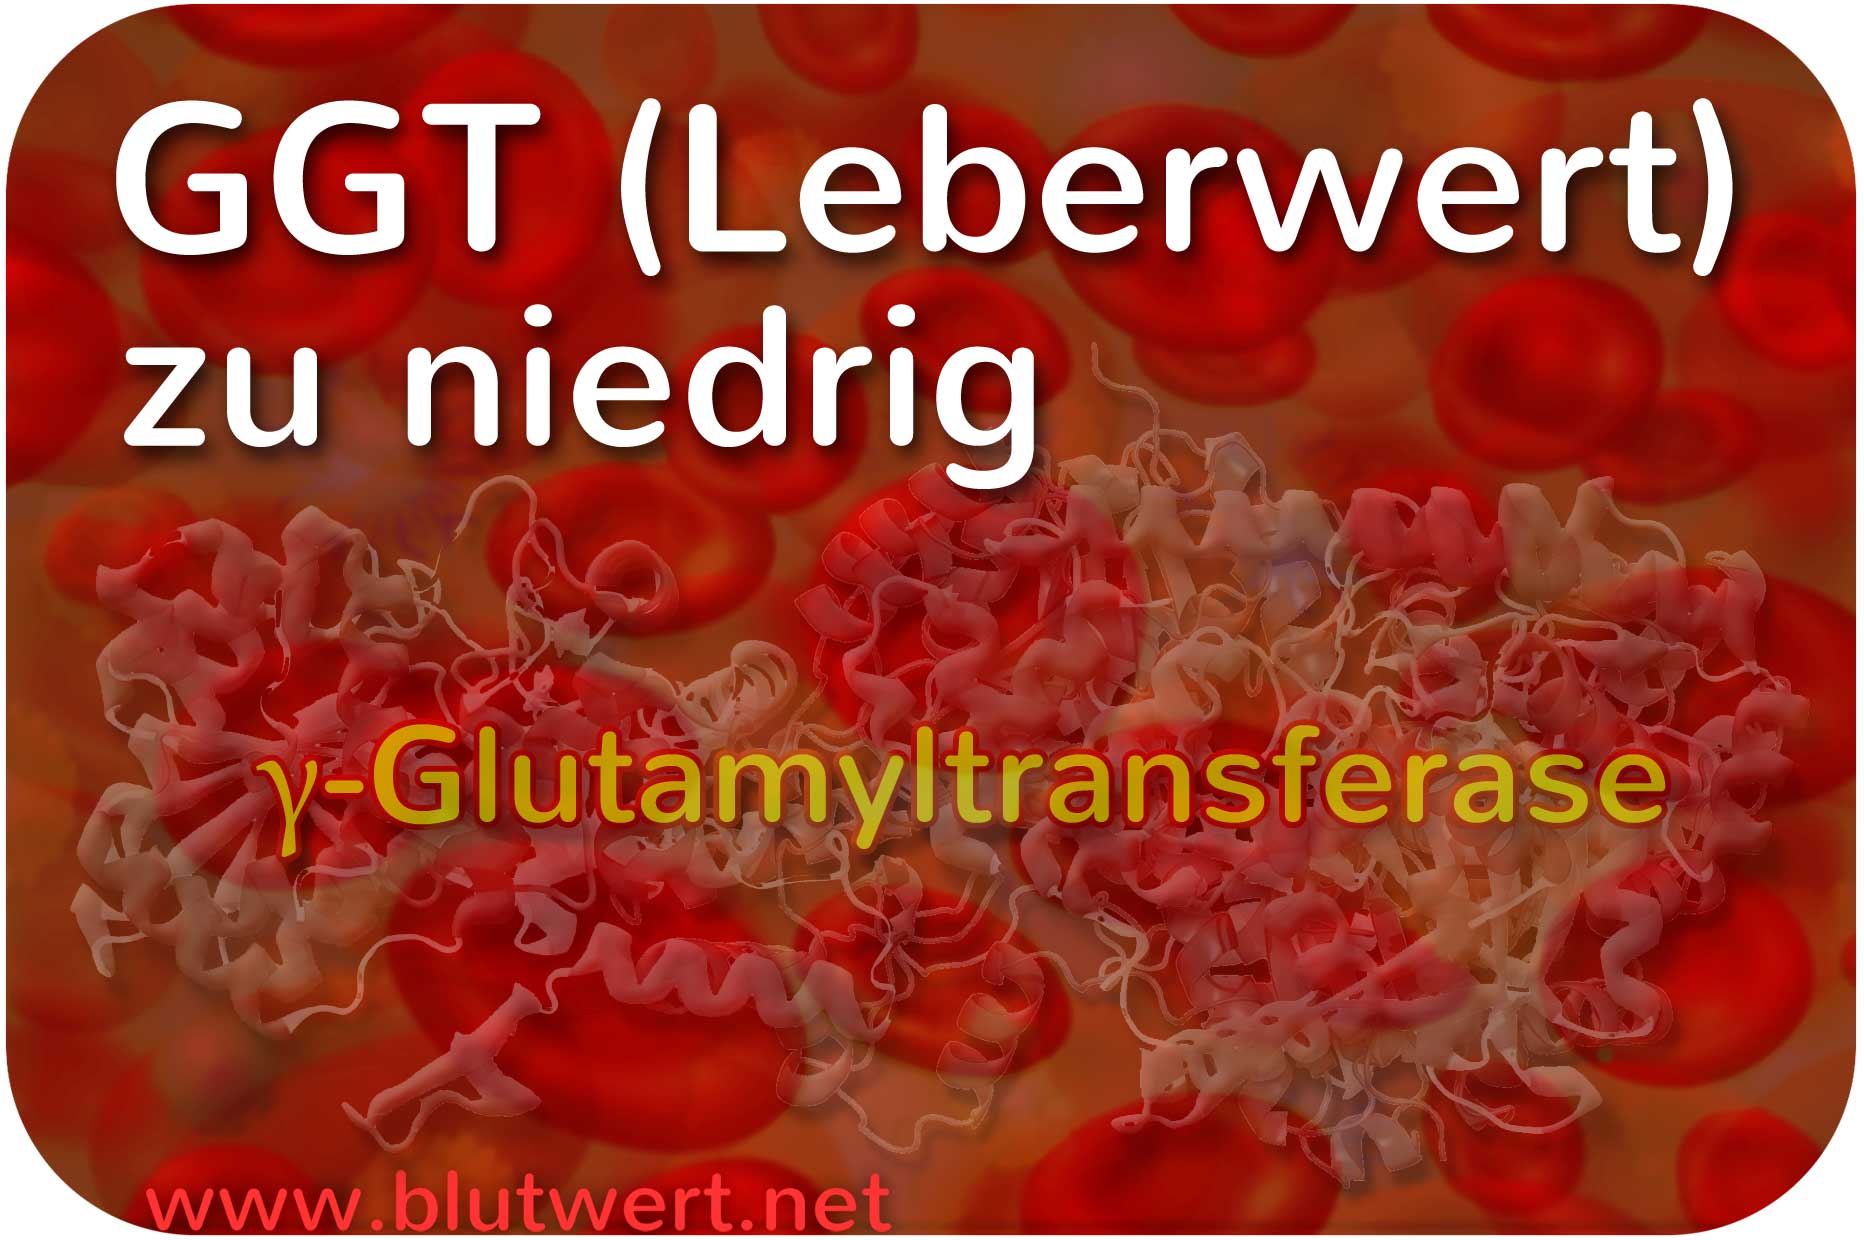 Leberwert GGT vermindert - Gamma-GT (γ-GT) zu niedrig (?)